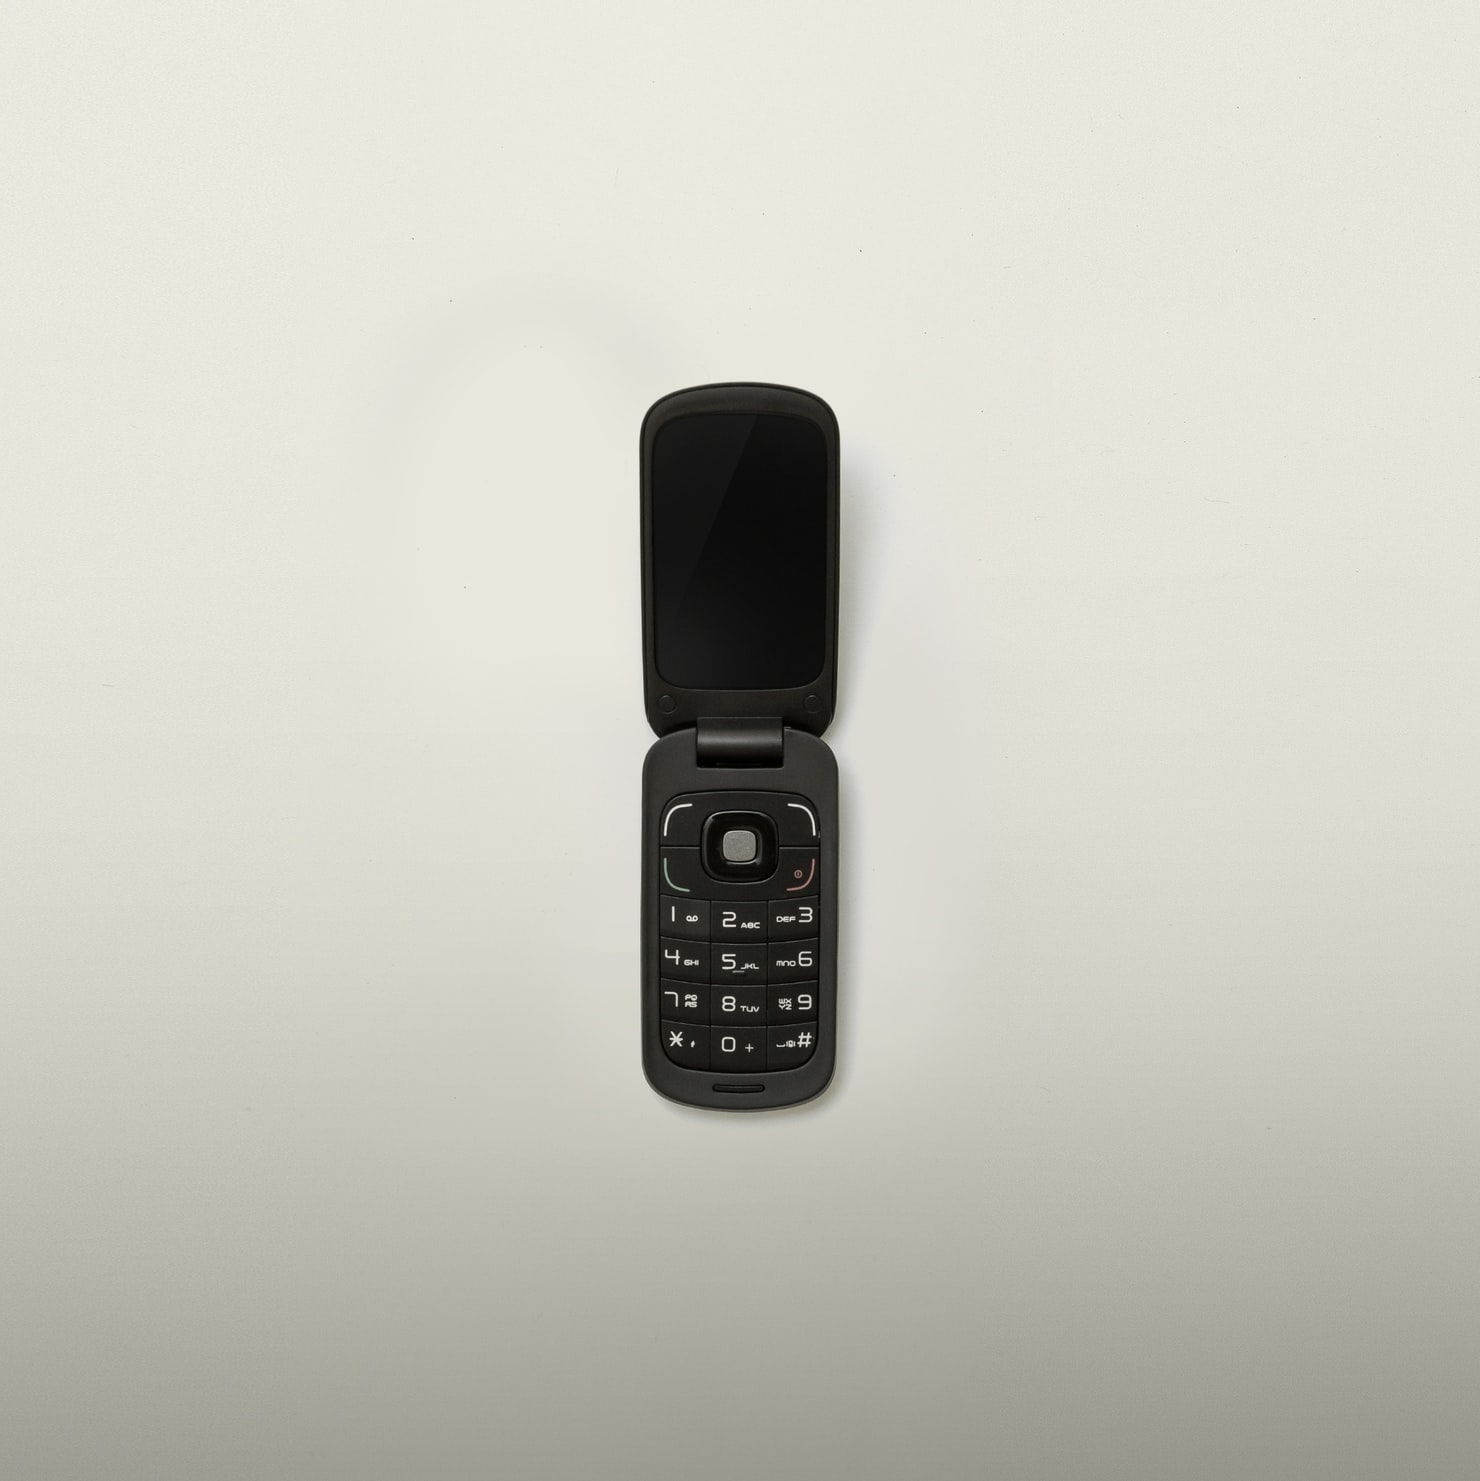 Year 2000 relics - untraceable phones